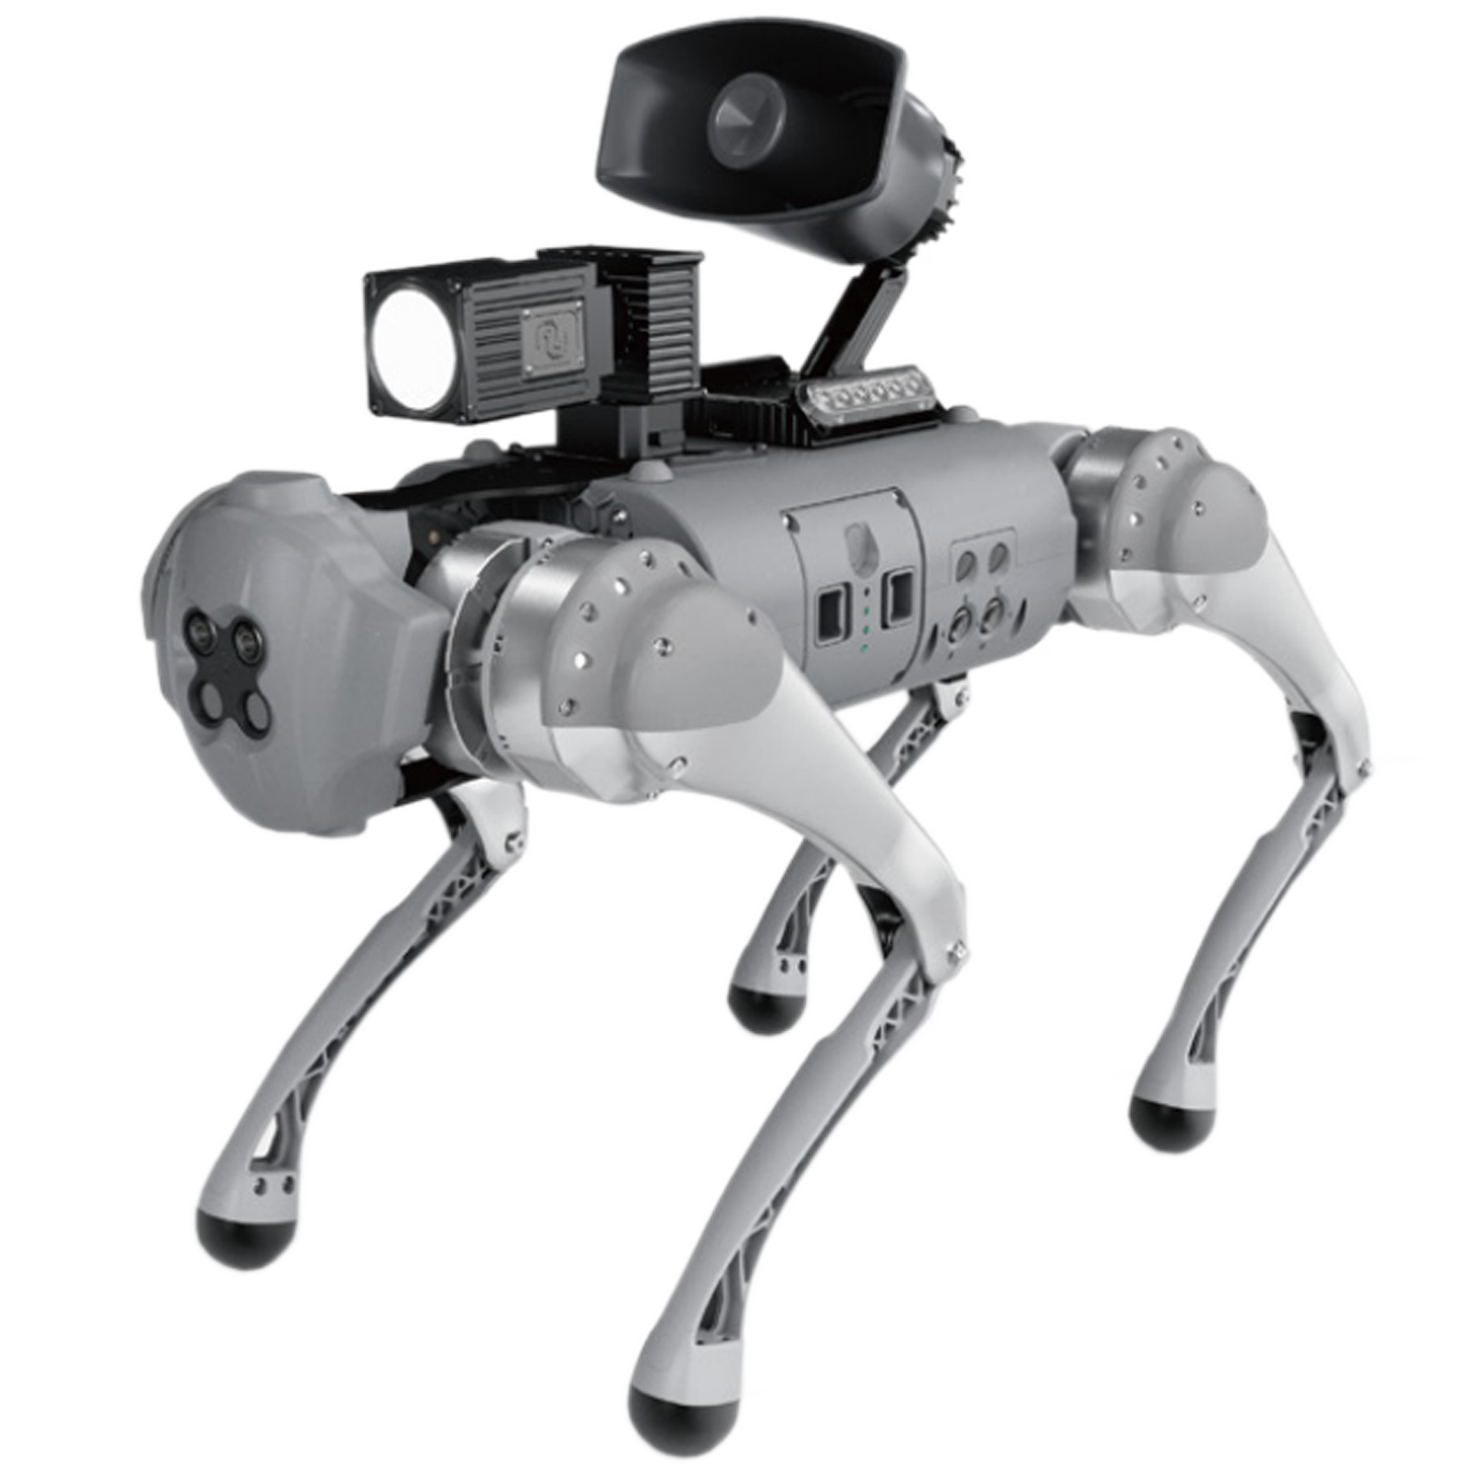 Cão robótico Scooby com câmera e auto falante acoplados - Futuremedia - Mídias e Soluções Interativas para eventos